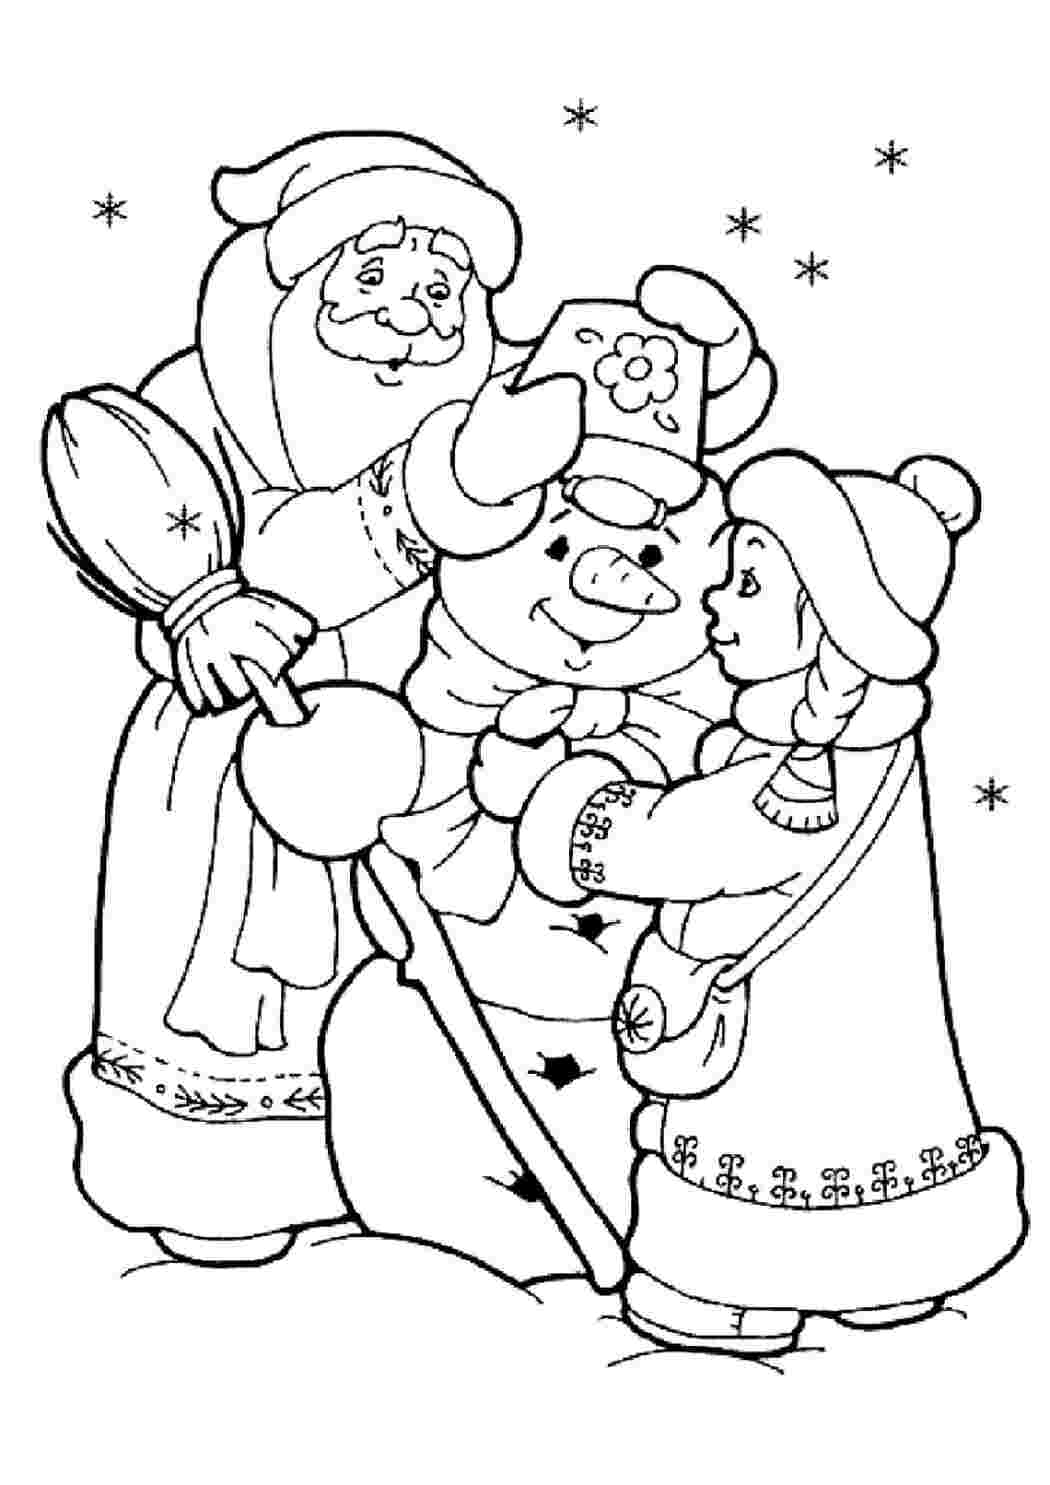 Раскраски Раскраски с новогодней красоткой снегурочкой и дедом морозом в хорошем качестве Раскраски дед мороз и снегурочка вместе на одной картике